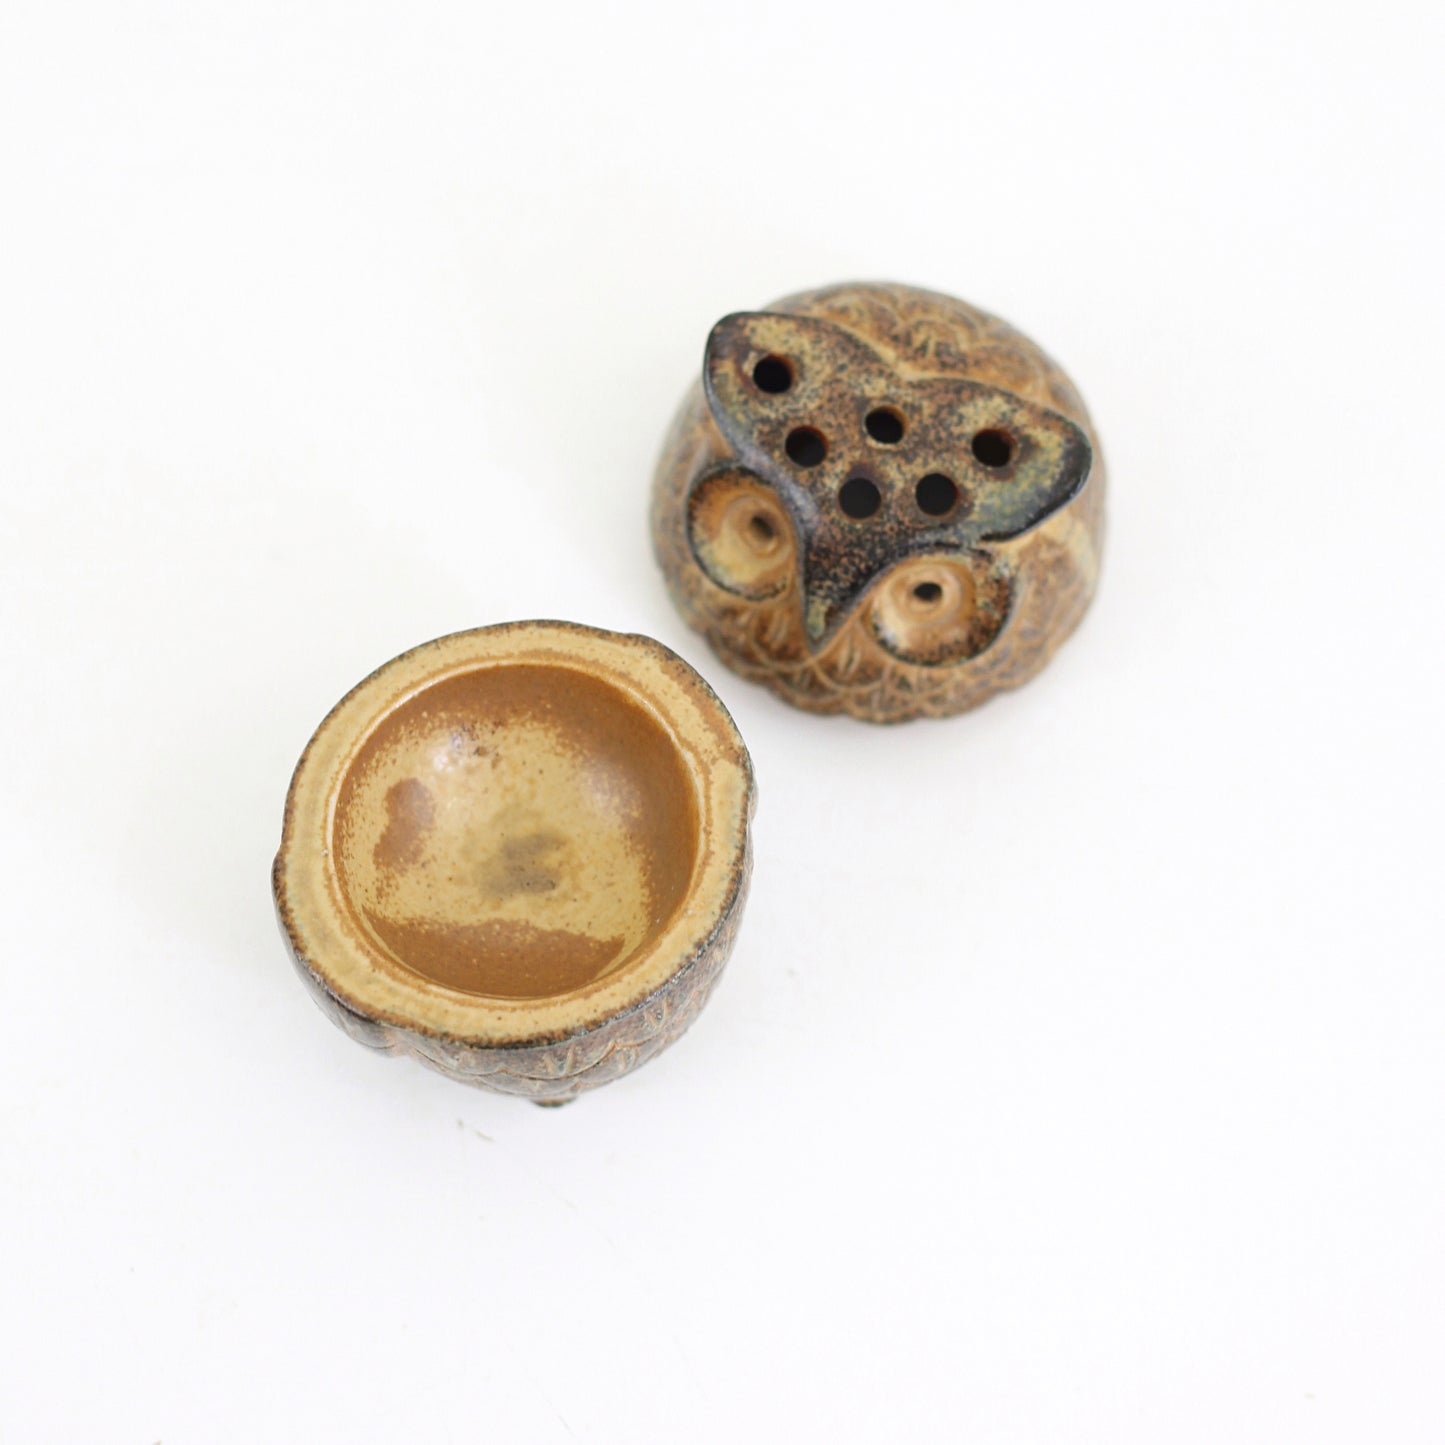 SOLD - Vintage Stoneware Owl Incense Holder